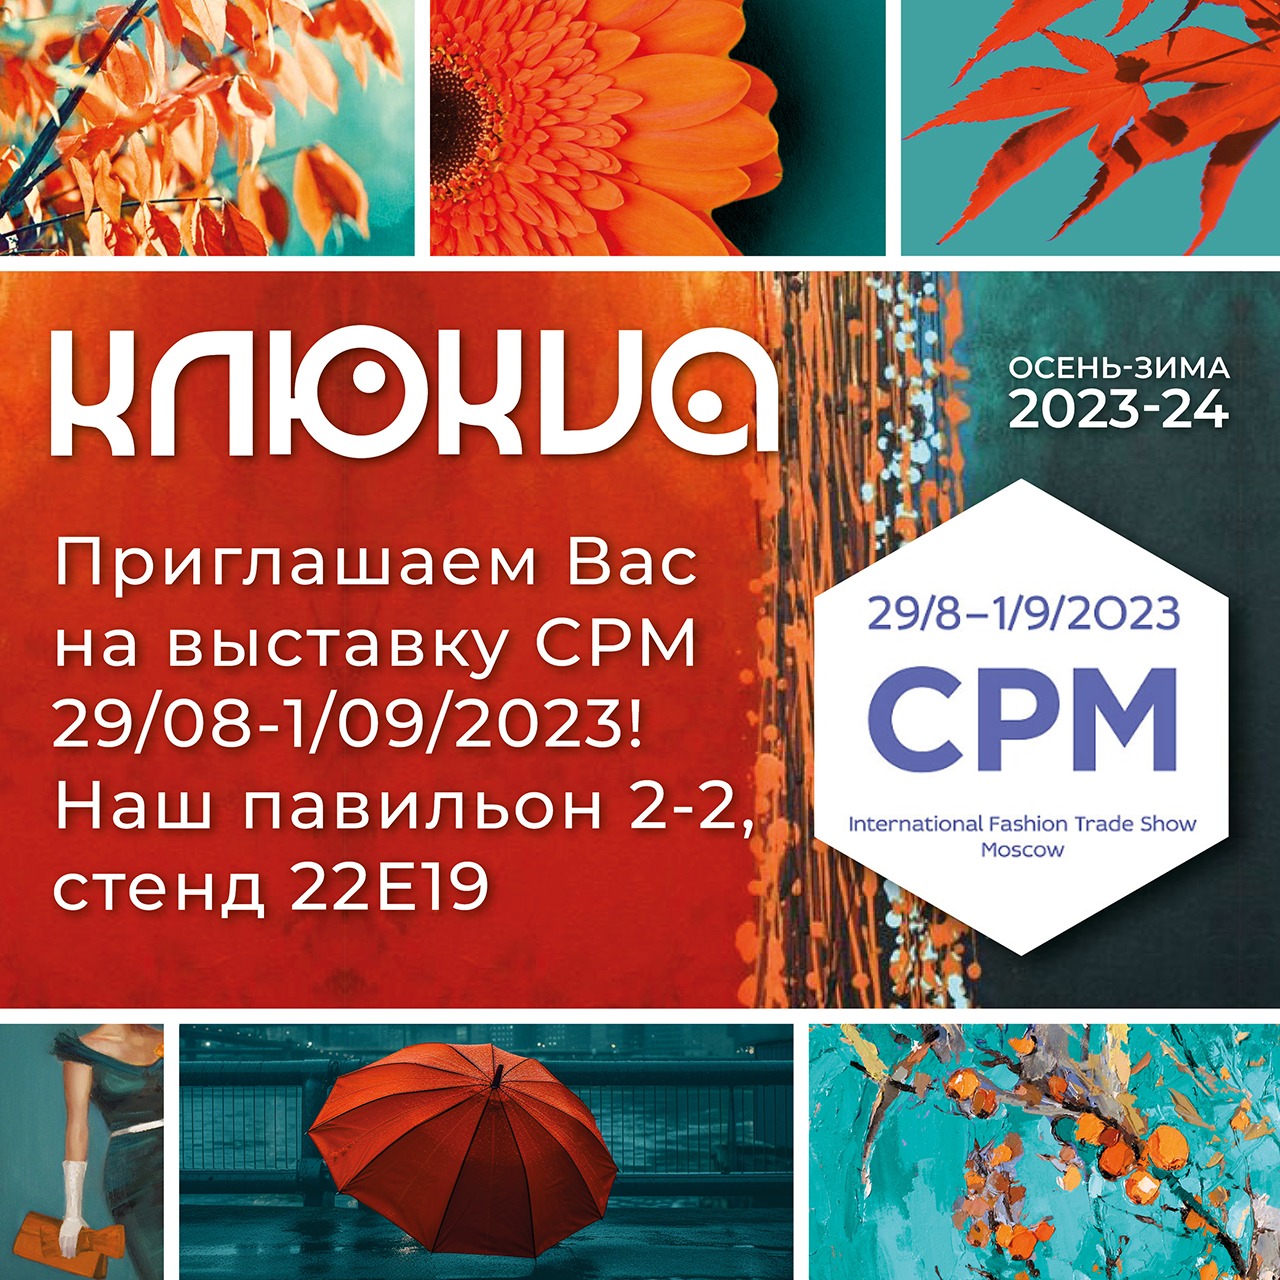 CPM 2023